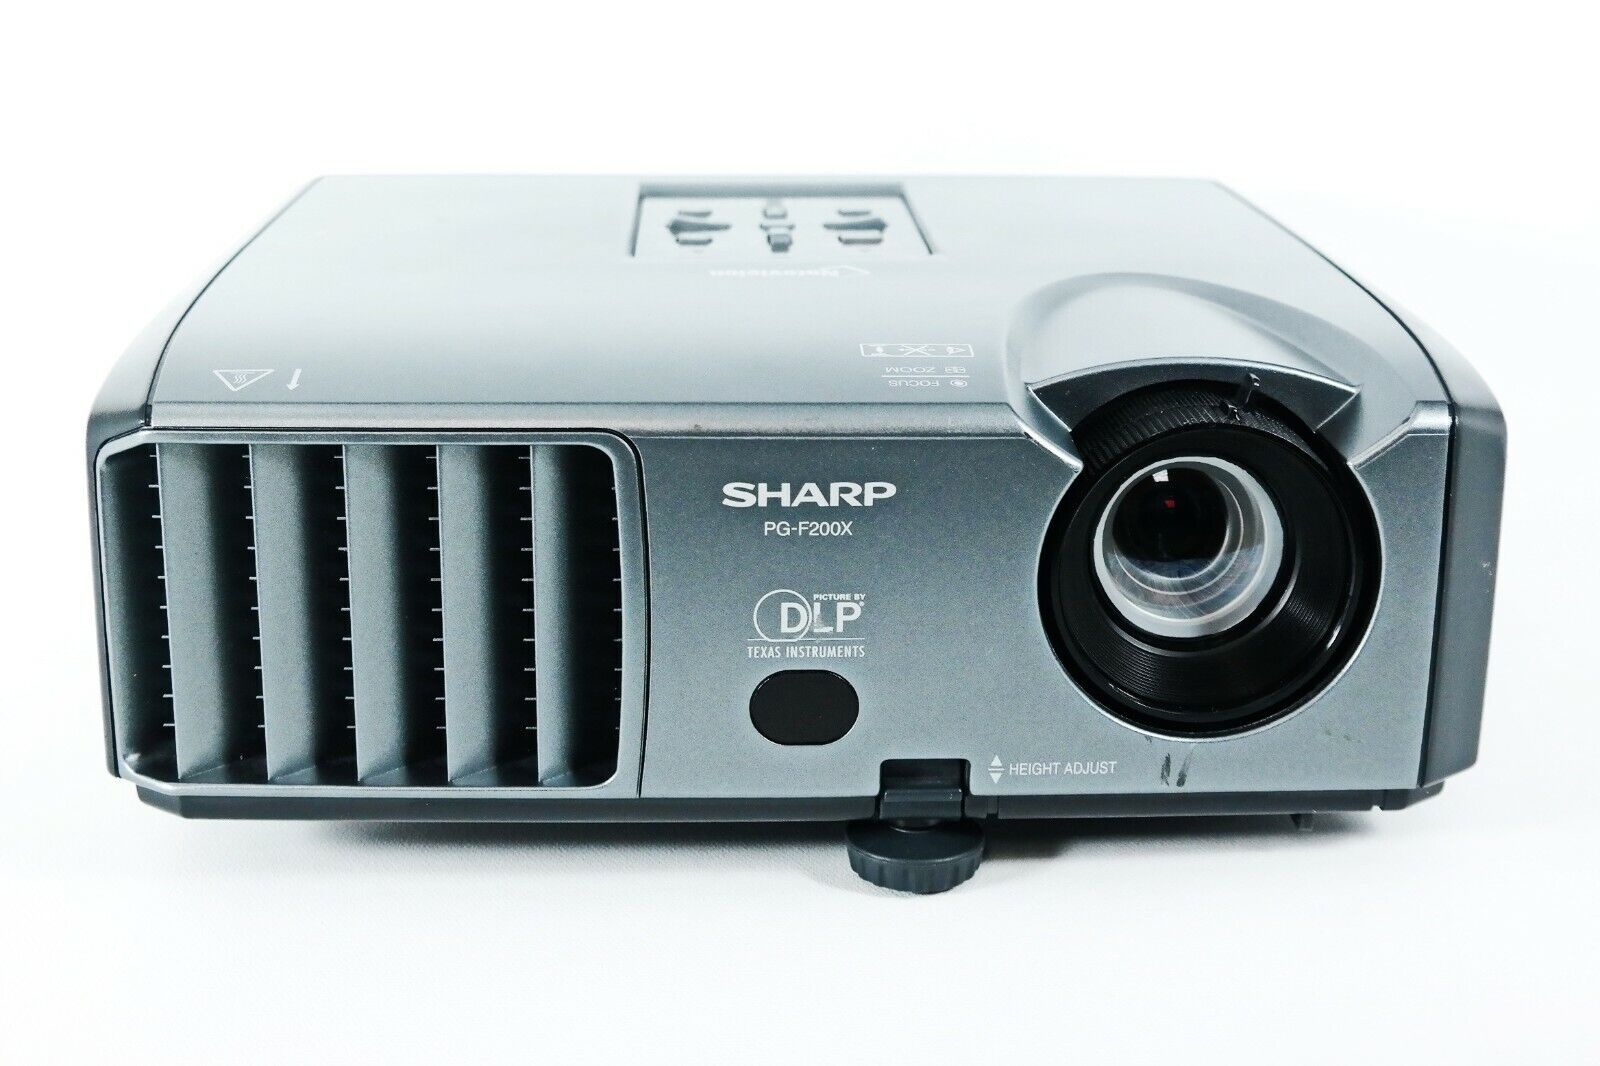 Lot of 2 - Sharp PG-F200X DLP Projector XGA Portable w/Accessories Sharp PG-F200X - фотография #2